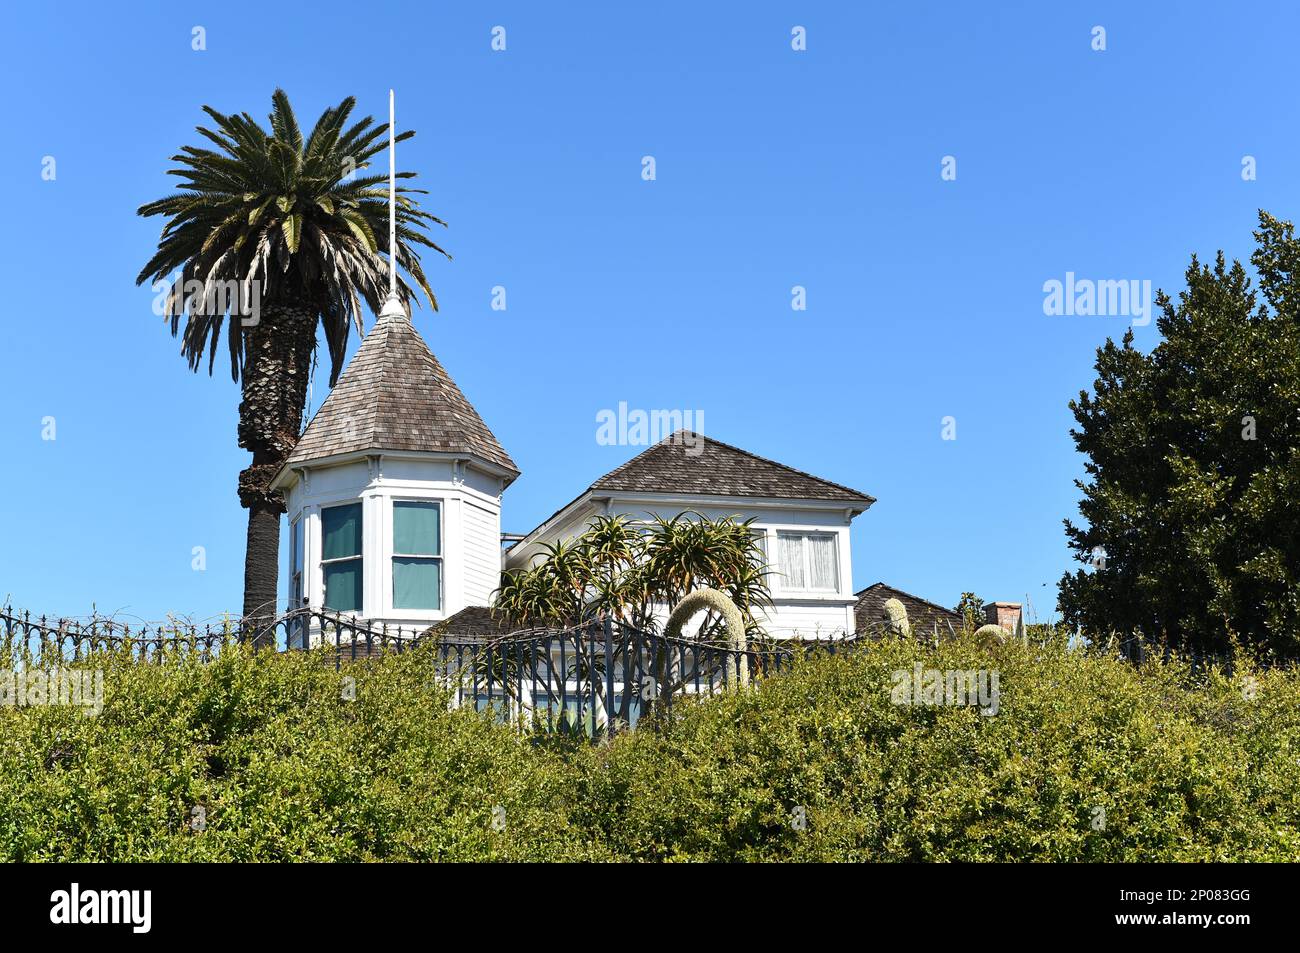 HUNTINGTON BEACH, KALIFORNIEN - 02. MÄRZ 2023: Newland House ist ein Bauernhaus aus dem Jahr 1898 im Queen Anne-Architekturstil, die älteste Residenz in HB und Listen Stockfoto